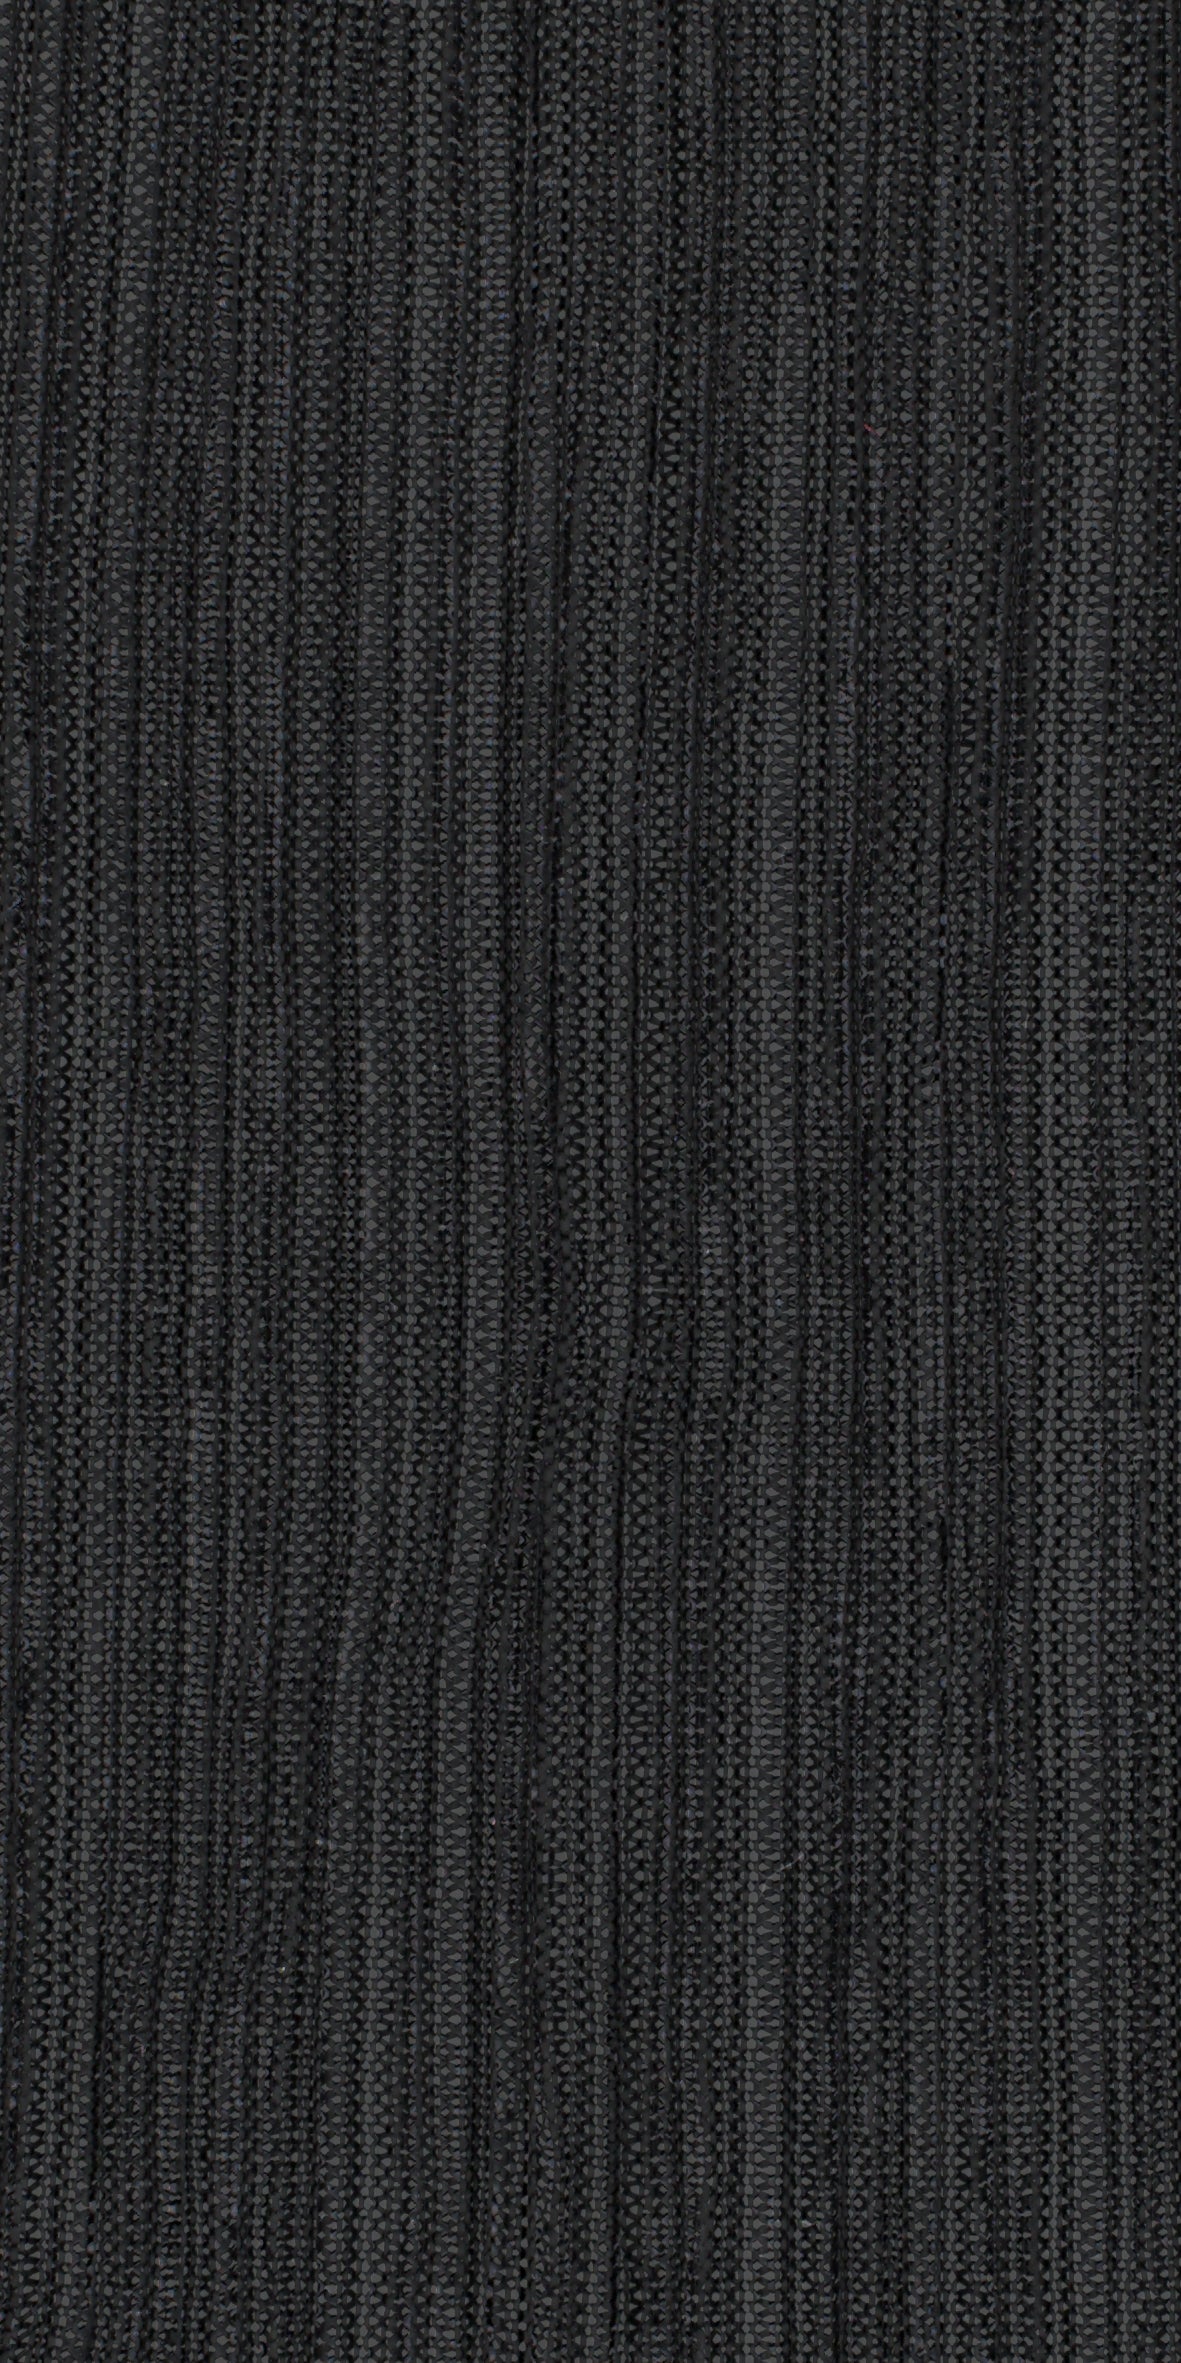 12006-18 Black Metallic Pleat Plain Dyed Blend 126g/yd 56&quot; black blend knit metallic plain dyed pleat ppl new Metallic, Pleat - knit fabric - woven fabric - fabric company - fabric wholesale - fabric b2b - fabric factory - high quality fabric - hong kong fabric - fabric hk - acetate fabric - cotton fabric - linen fabric - metallic fabric - nylon fabric - polyester fabric - spandex fabric - chun wing hing - cwh hk - fabric worldwide ship - 針織布 - 梳織布 - 布料公司- 布料批發 - 香港布料 - 秦榮興